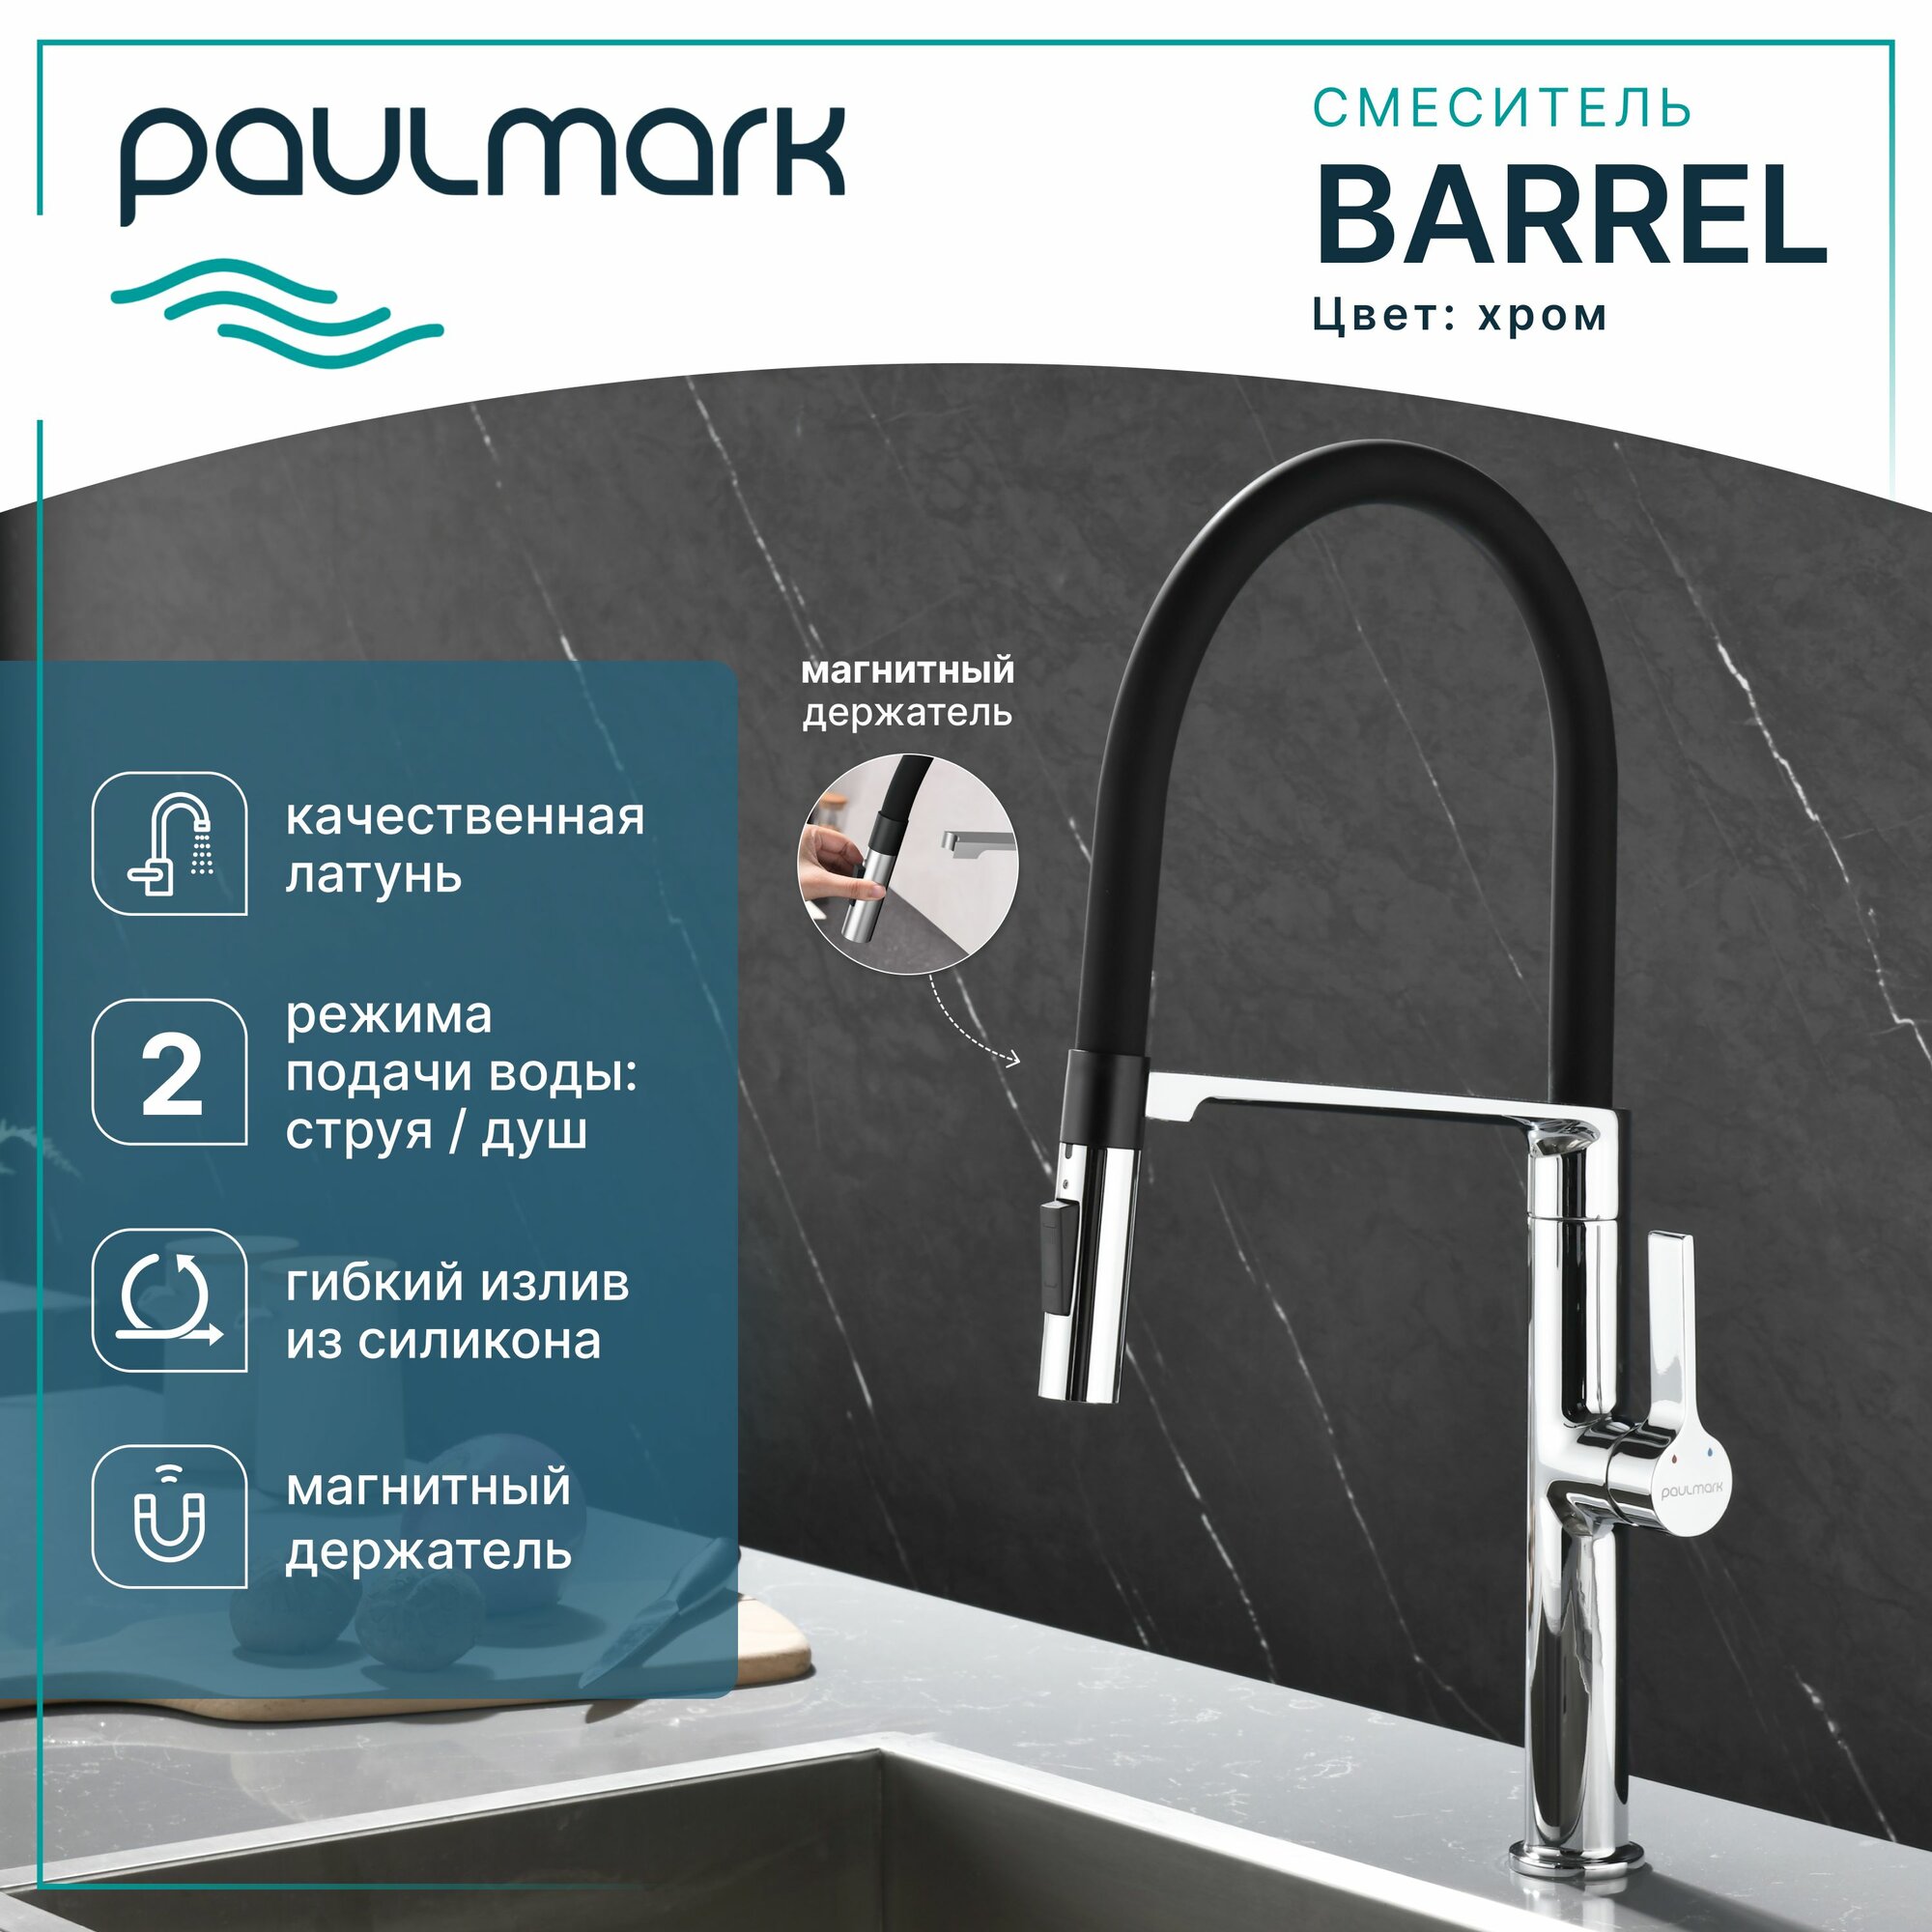 Смеситель для кухни с гибки изливом Paulmark Barrel, цвет хром, Ba214029-CR